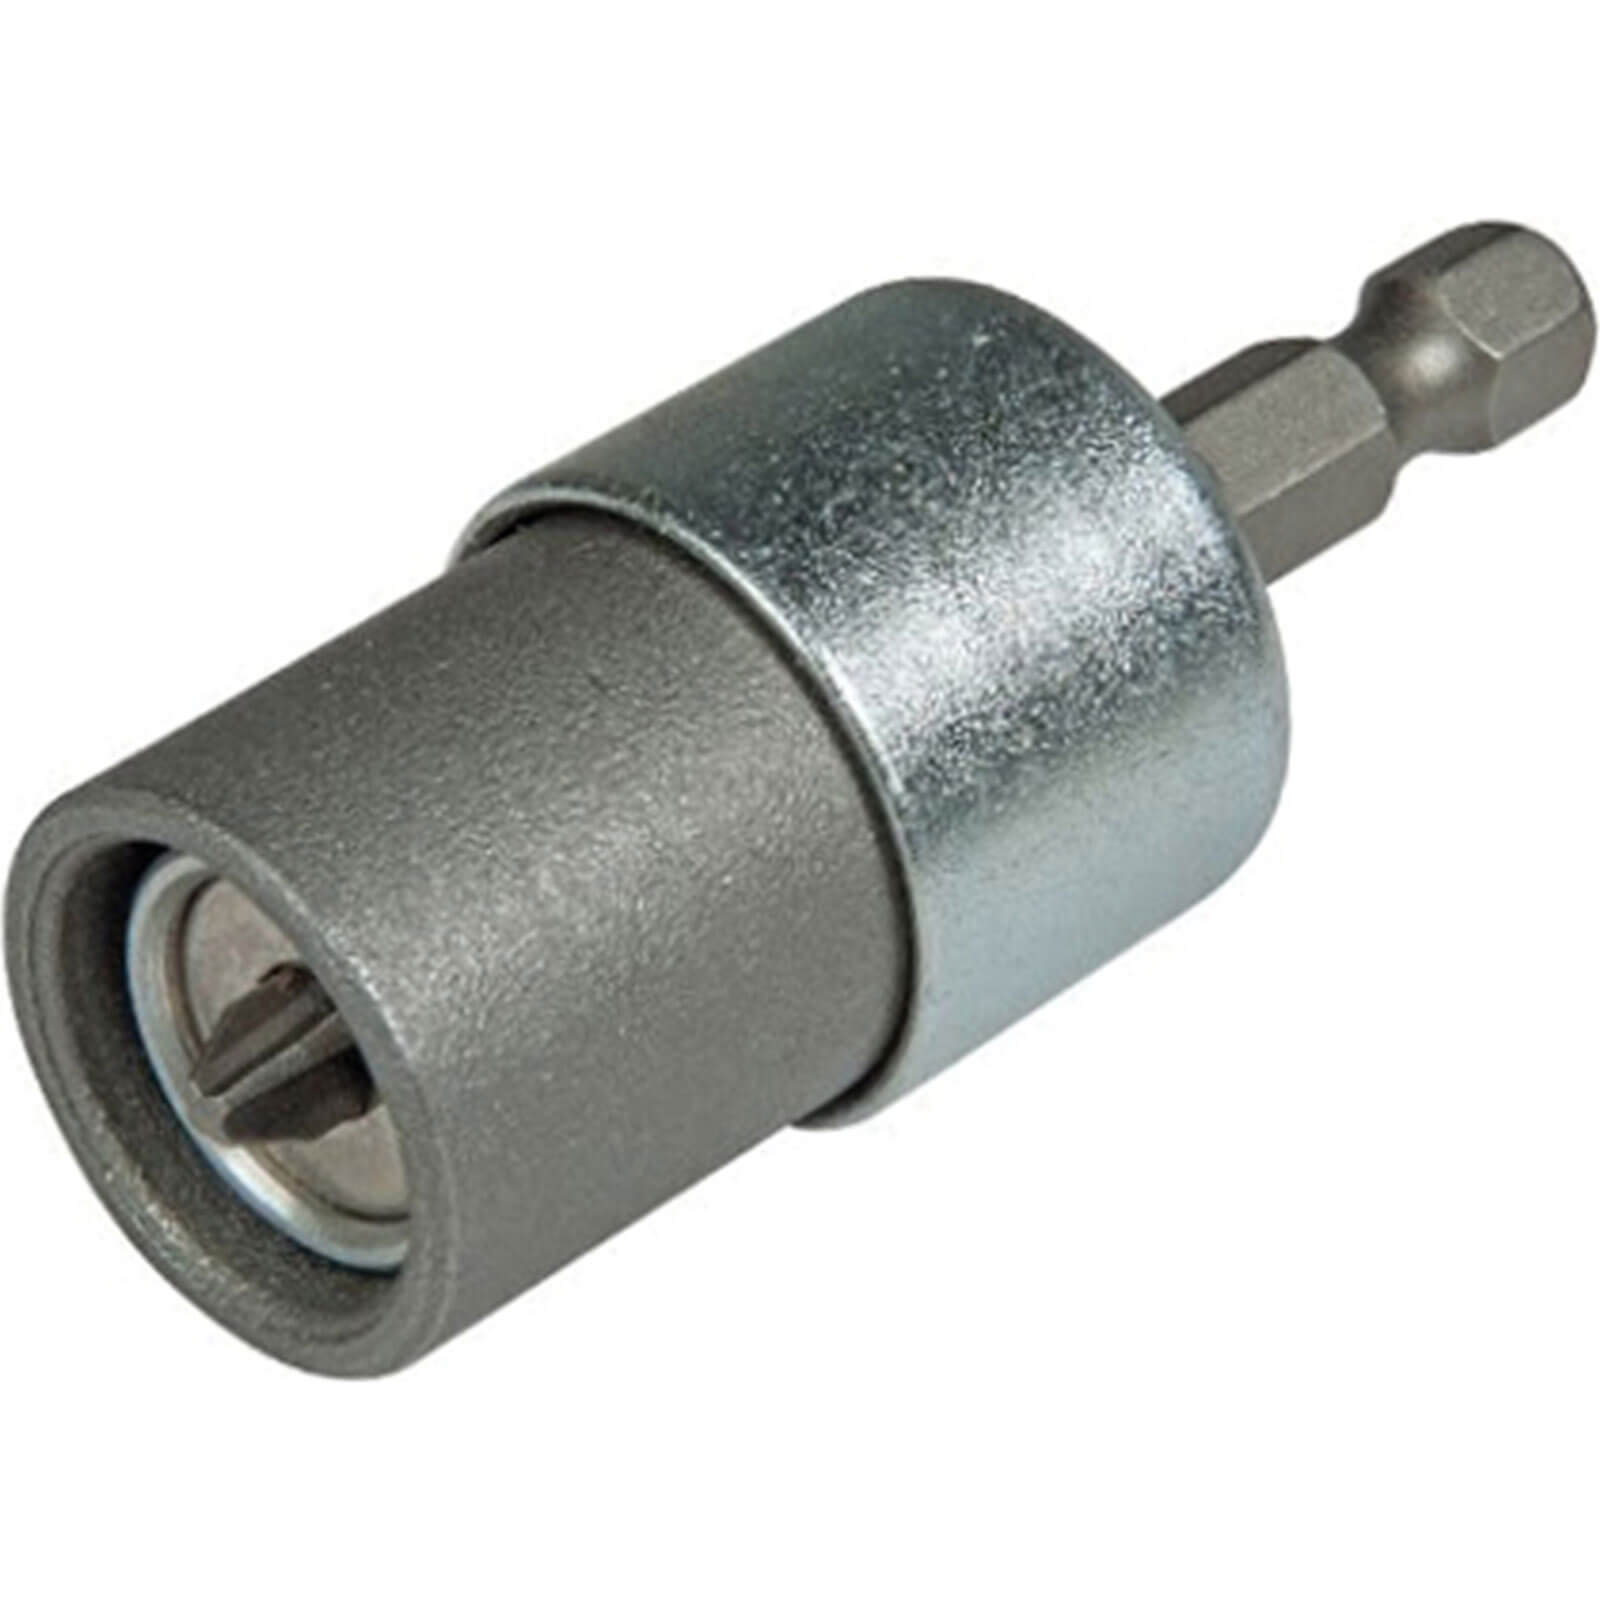 Stanley Magnetic Drywall Screw Adaptor